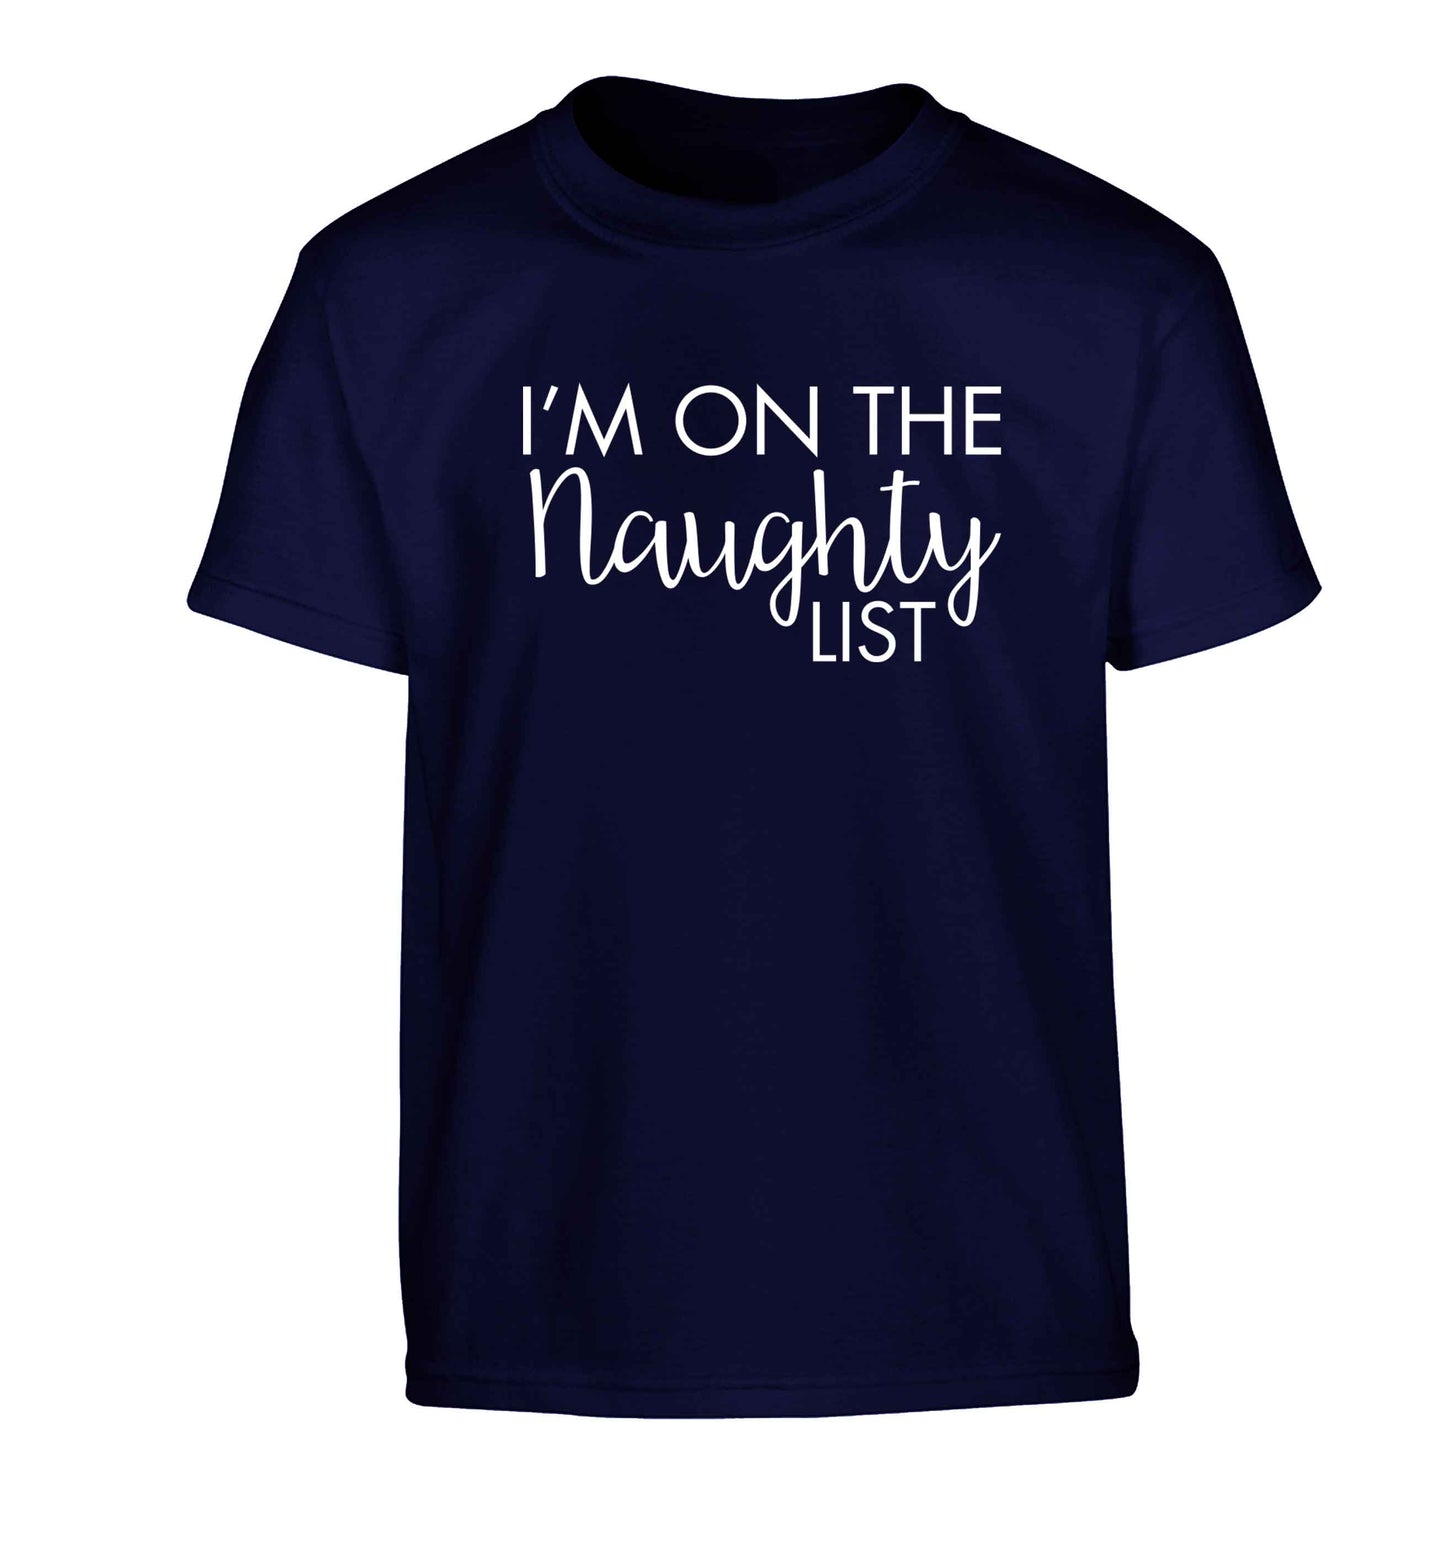 I'm on the naughty list Children's navy Tshirt 12-13 Years